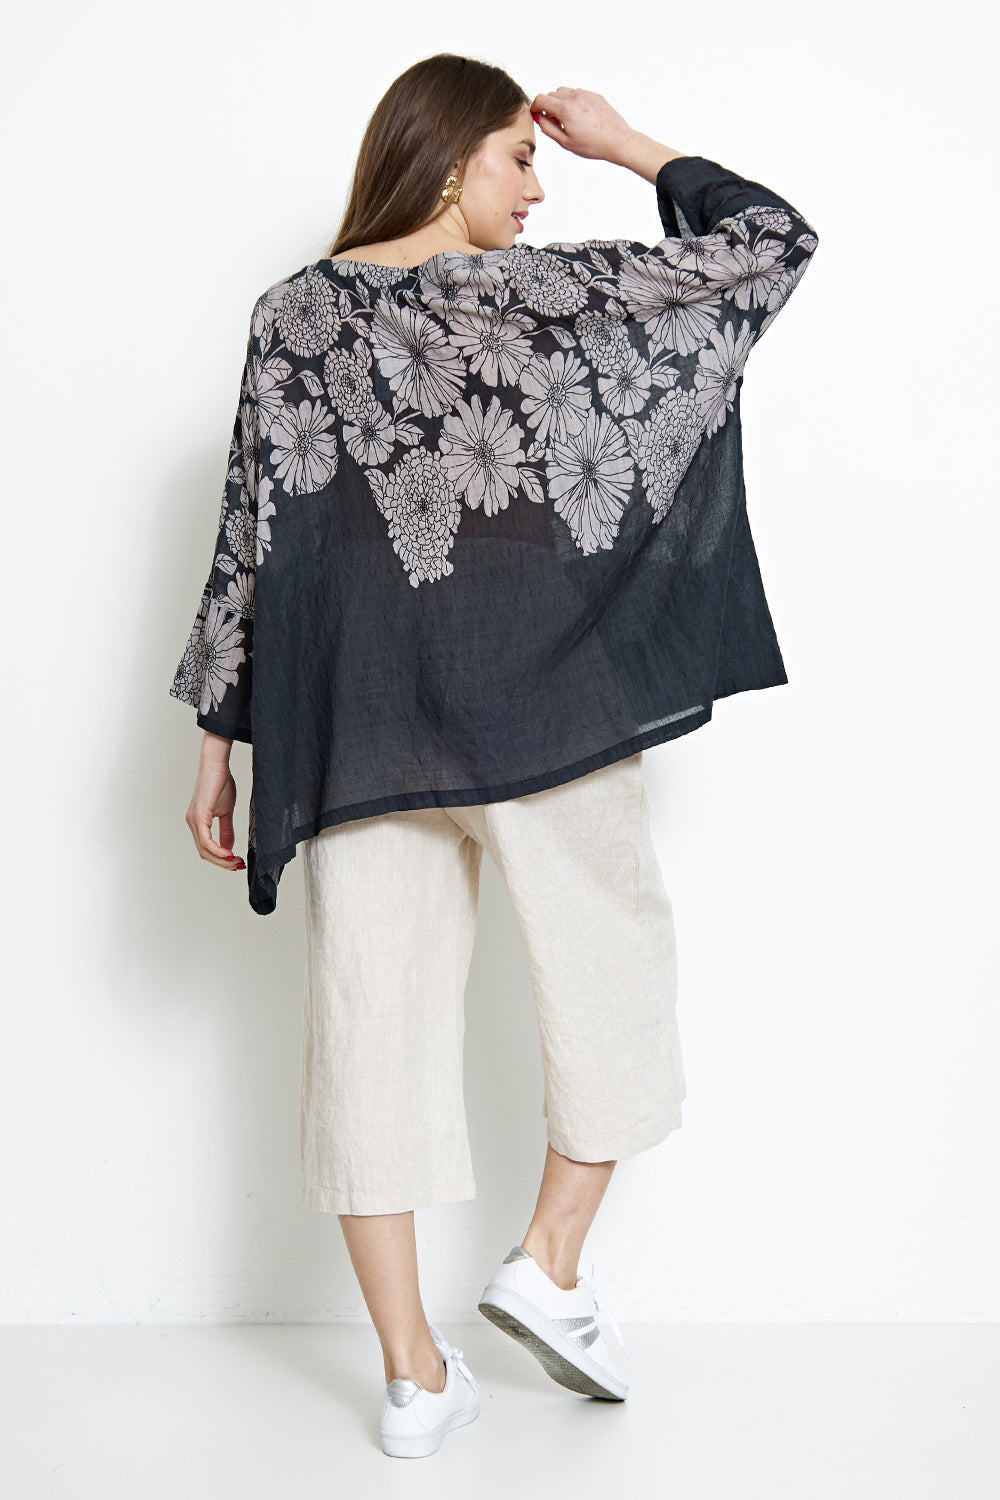 Dahlia-inspired flower print pocket blouse